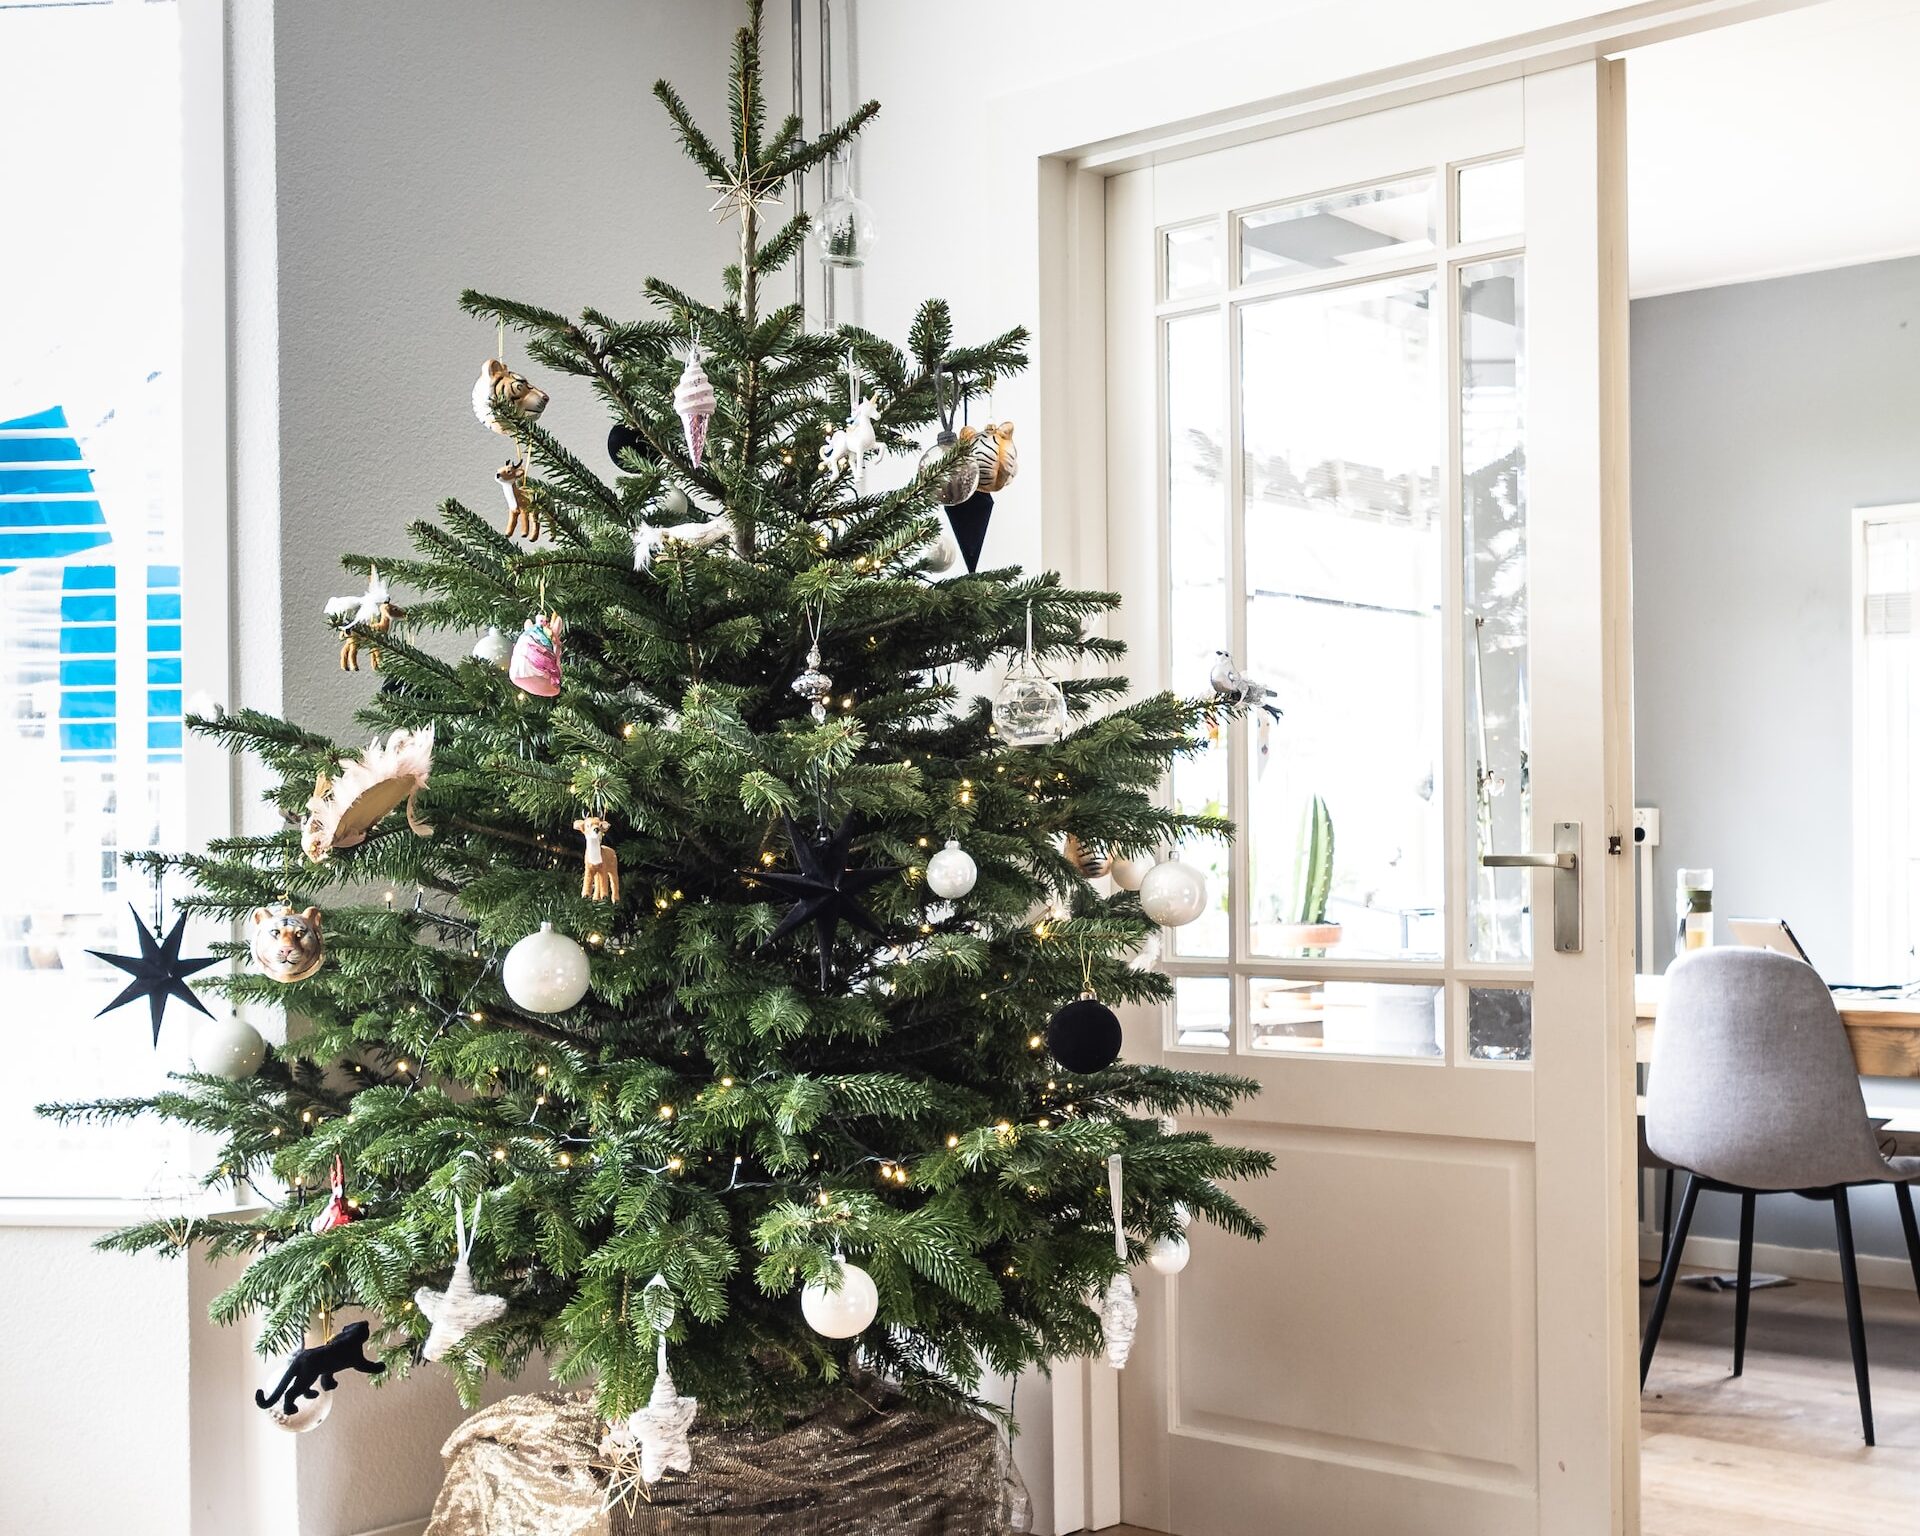 Το μυστικό για να κρατήσεις φρέσκο για περισσότερο καιρό το φυσικό χριστουγεννιάτικο δέντρο σου